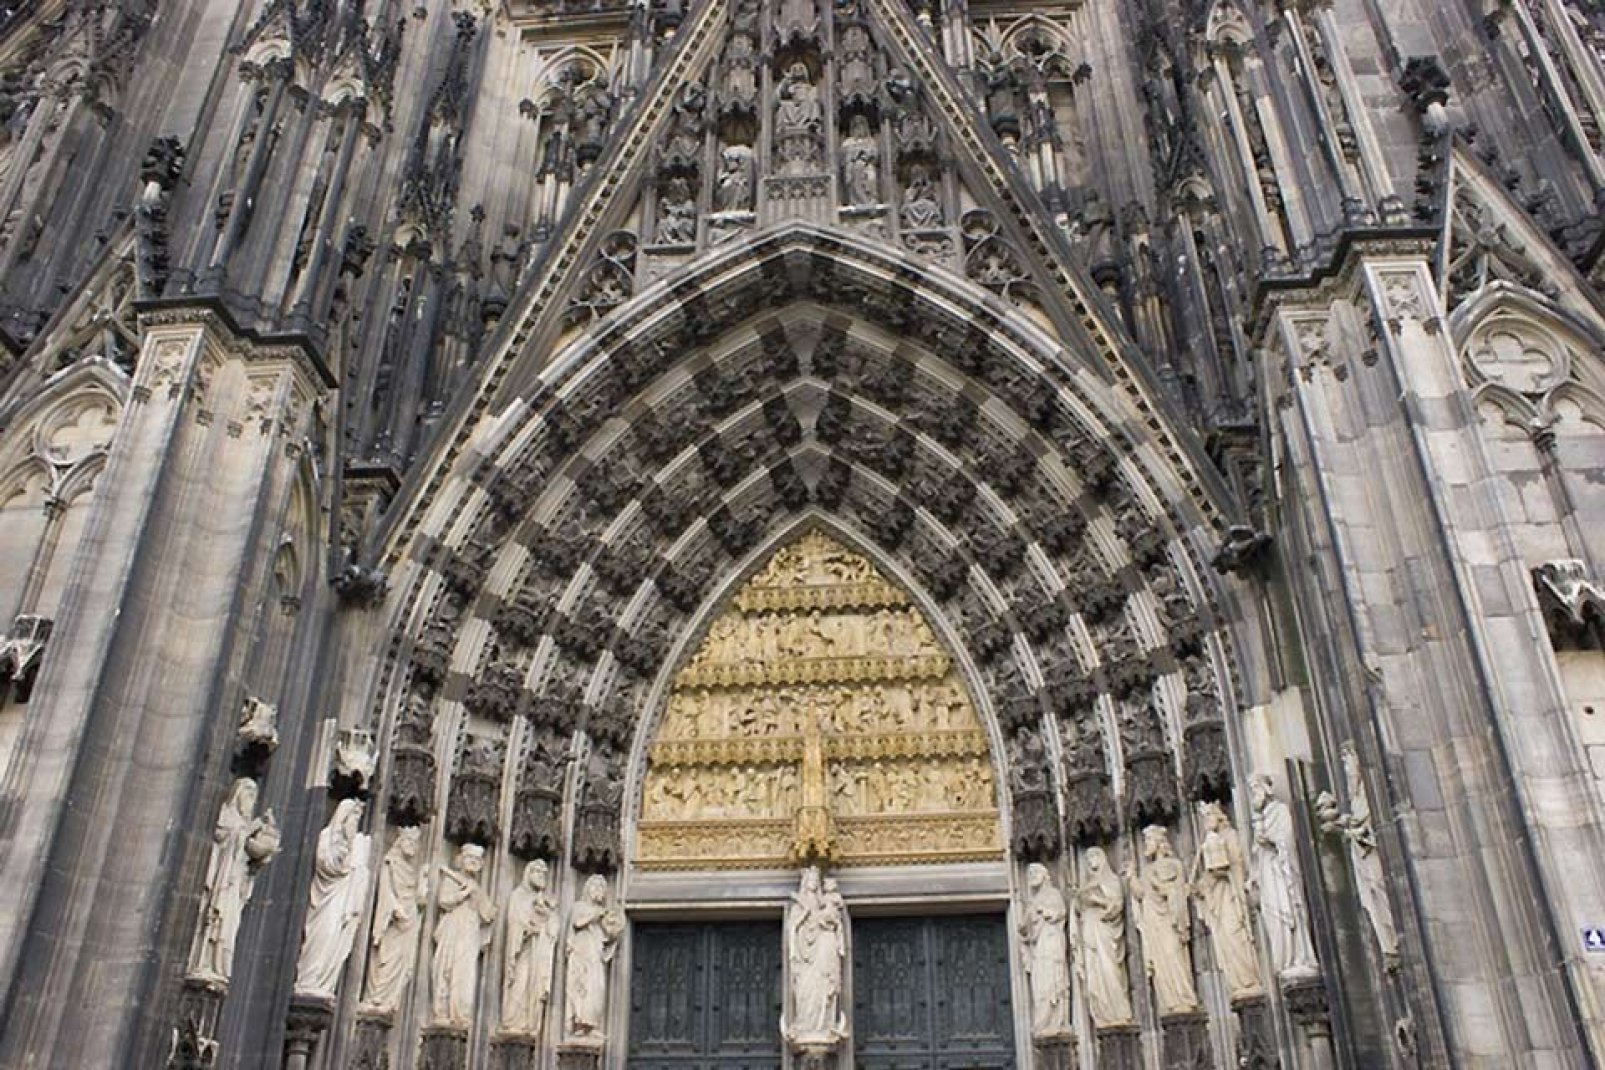 La catedral de Colonia es una de las mayores catedrales góticas.